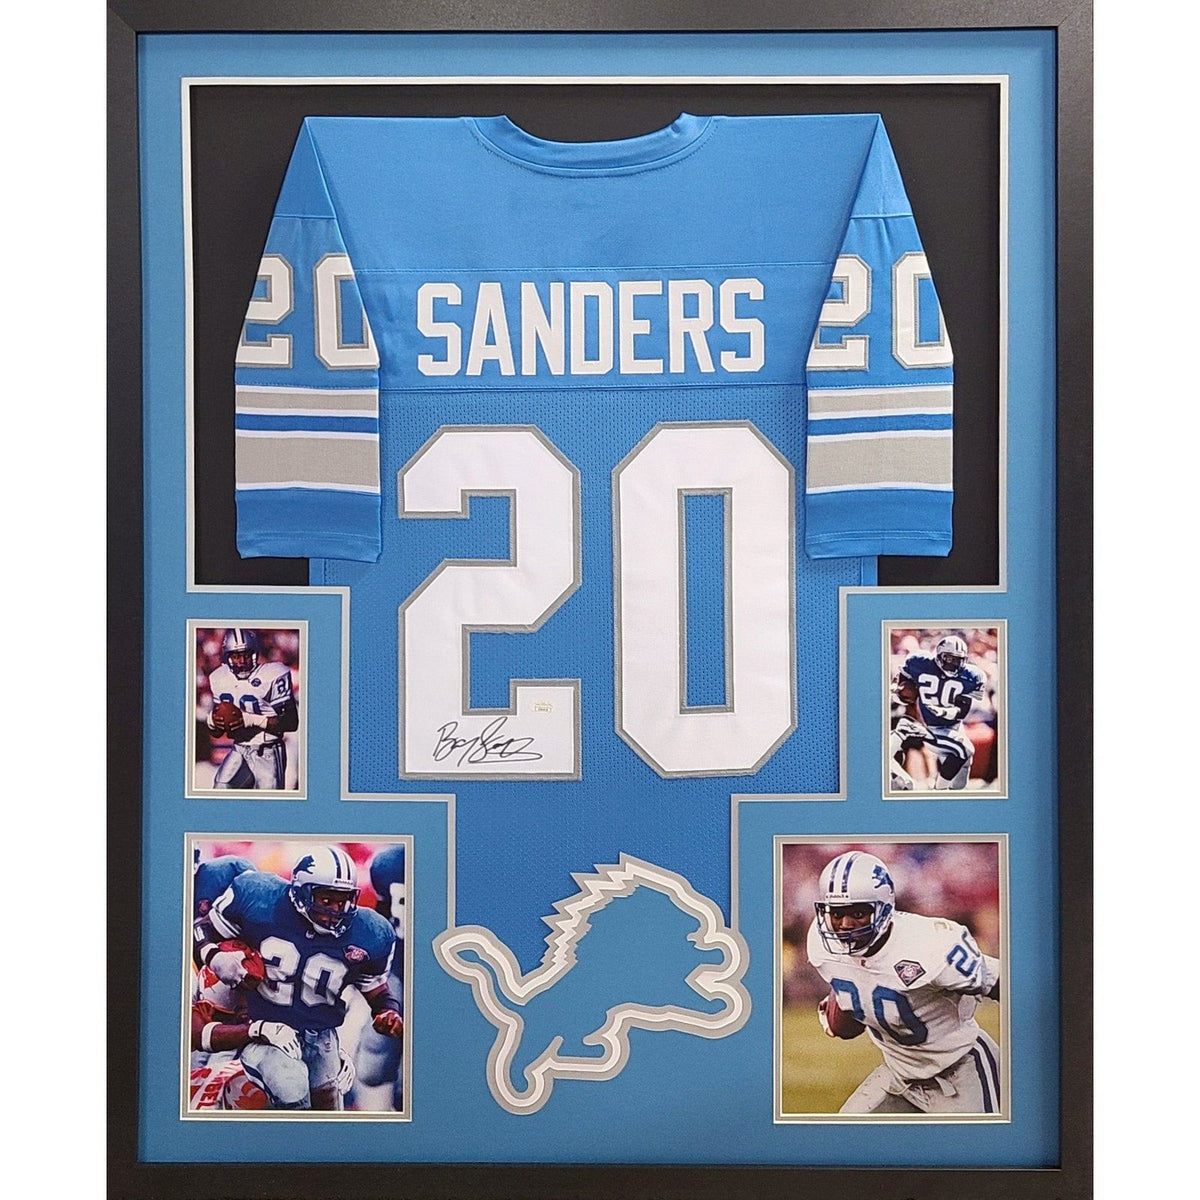 Barry Sanders Signed Framed Jersey JSA Autographed Detroit Lions